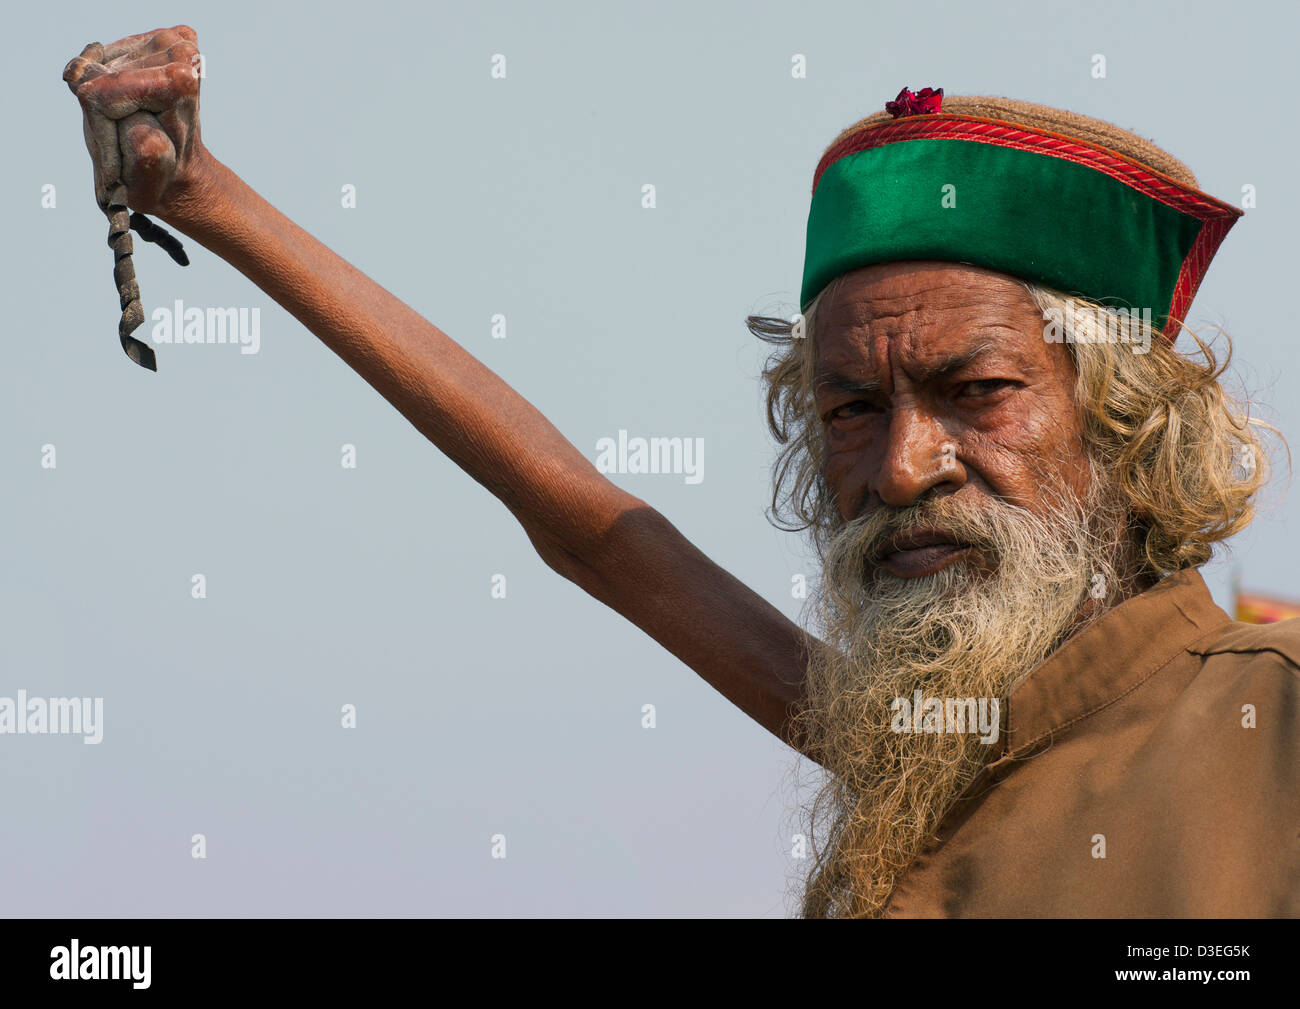 Sadhu Amar Bharati Holding His Arm Up for 38 years, Maha Kumbh Mela, Allahabad, India Stock Photo